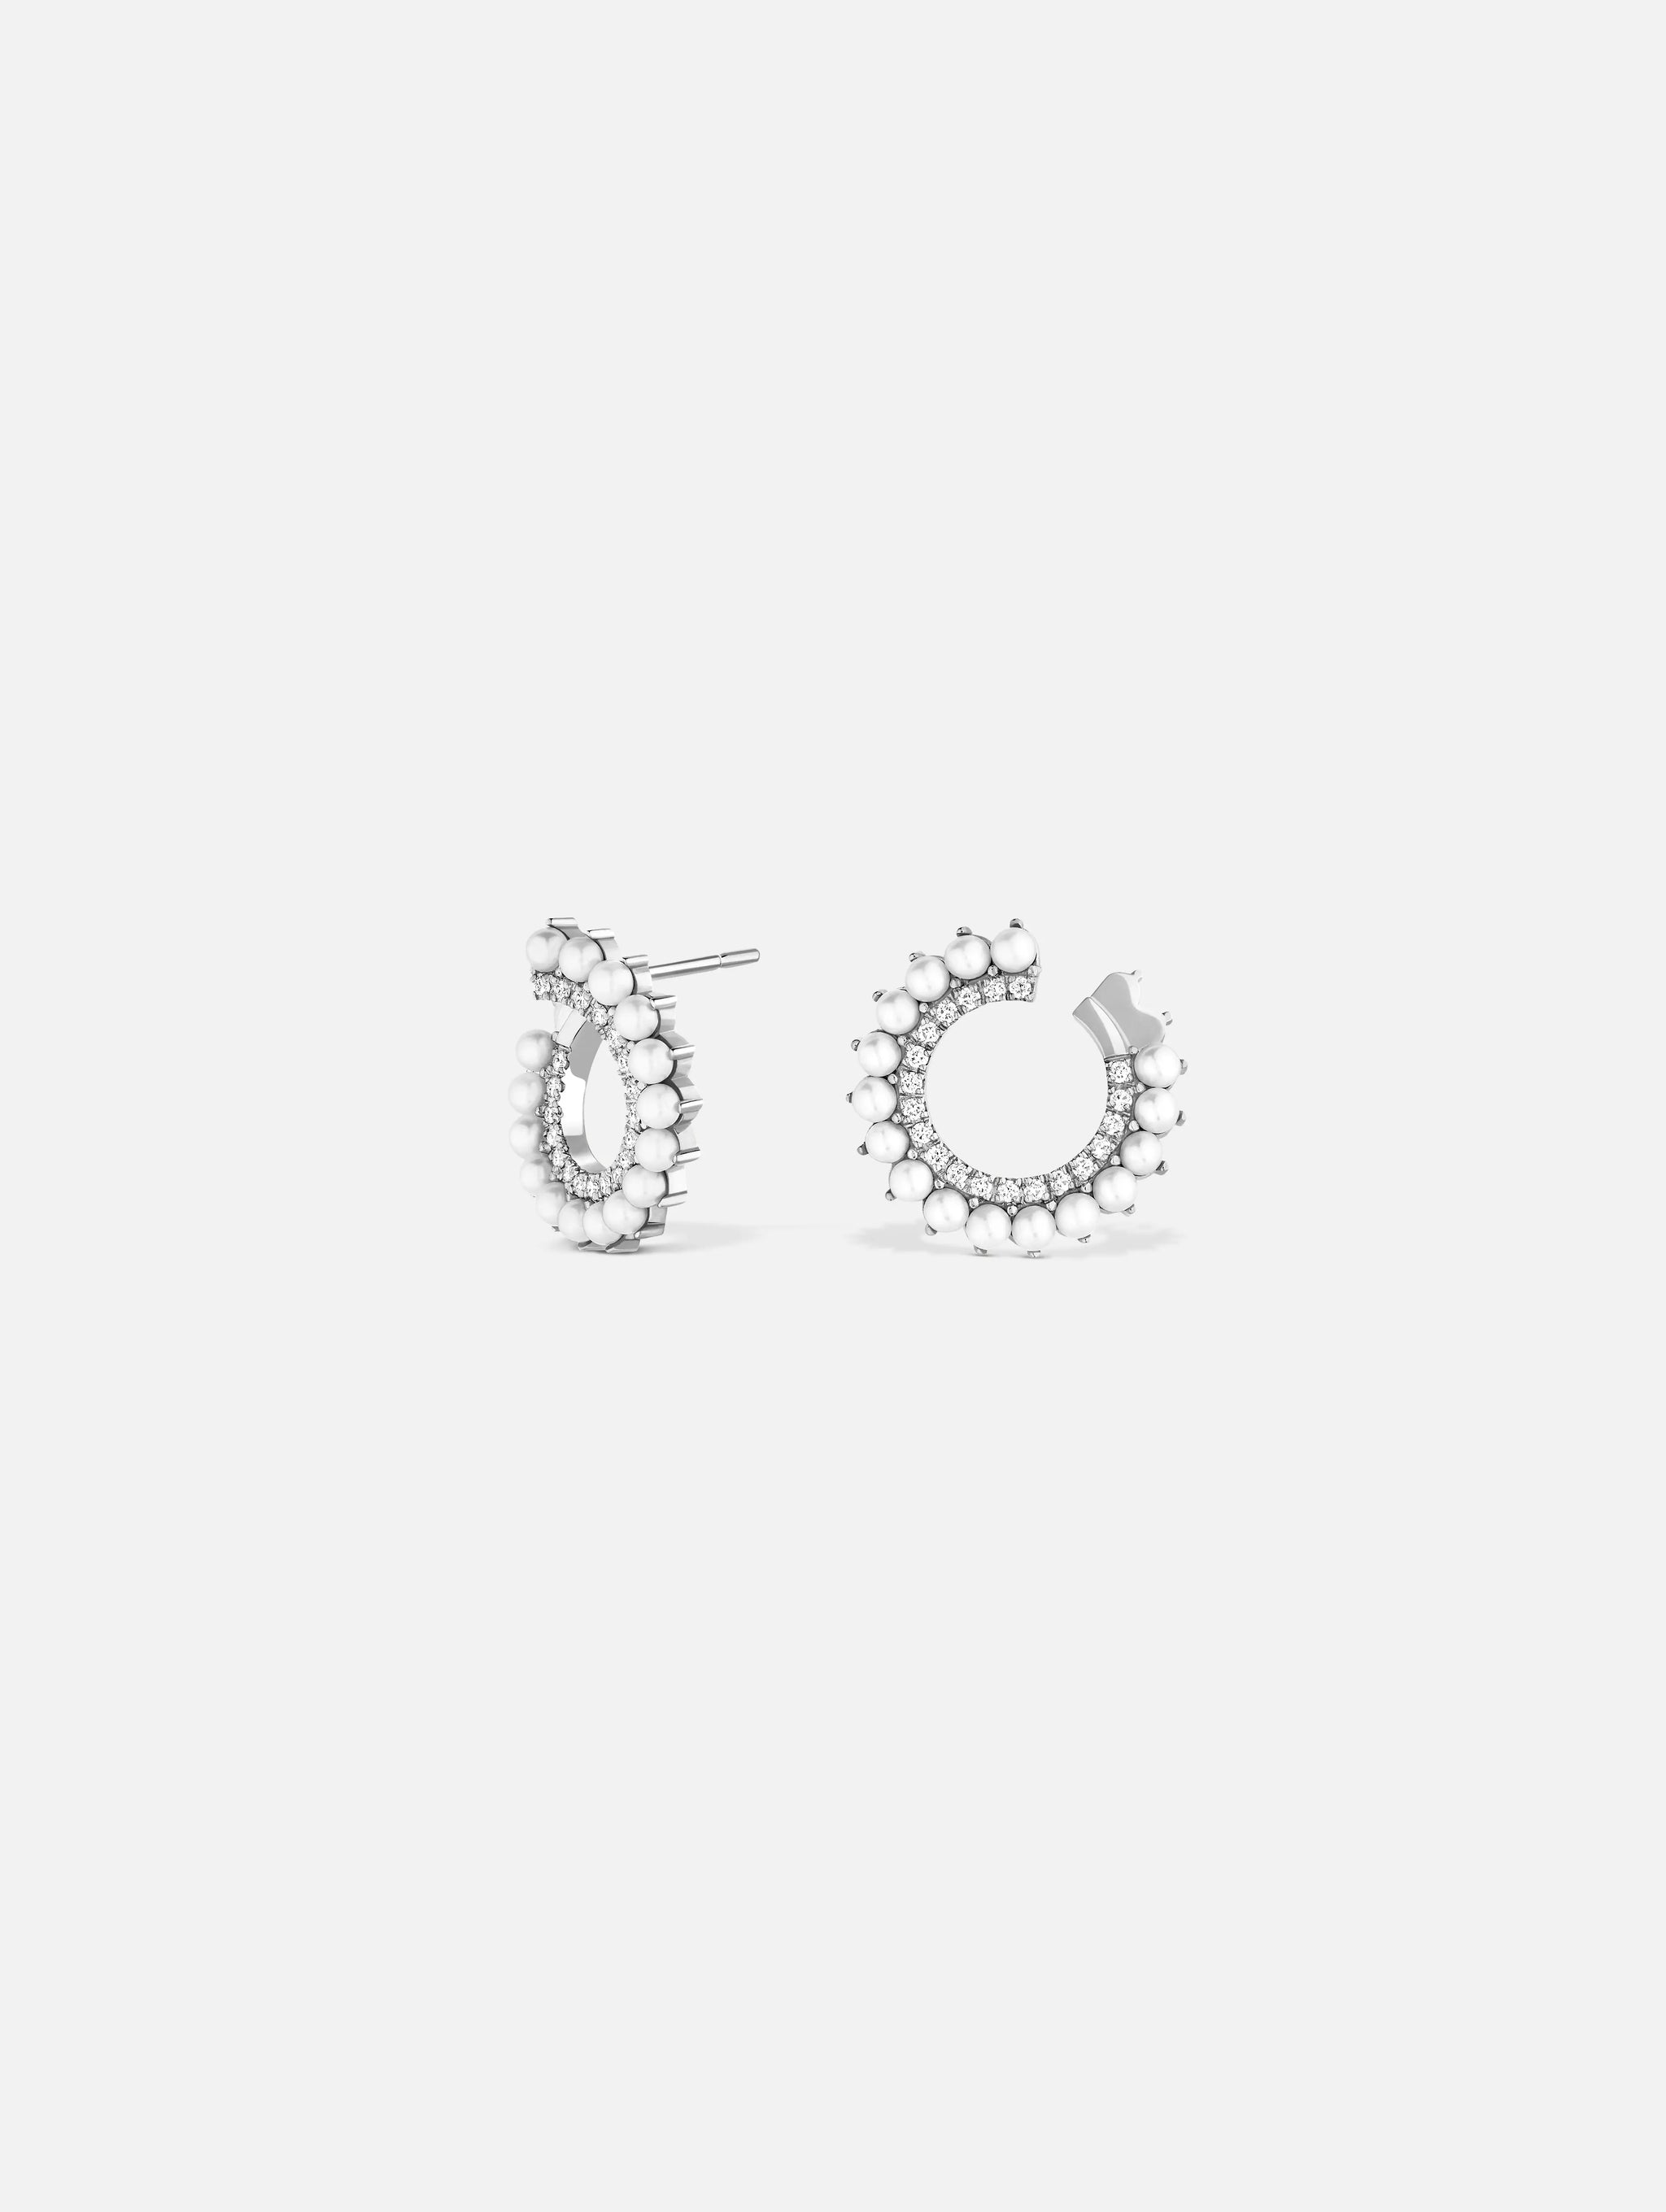 Boucles d'oreilles Vendôme Perle en Or Blanc - 1 - Nouvel Heritage